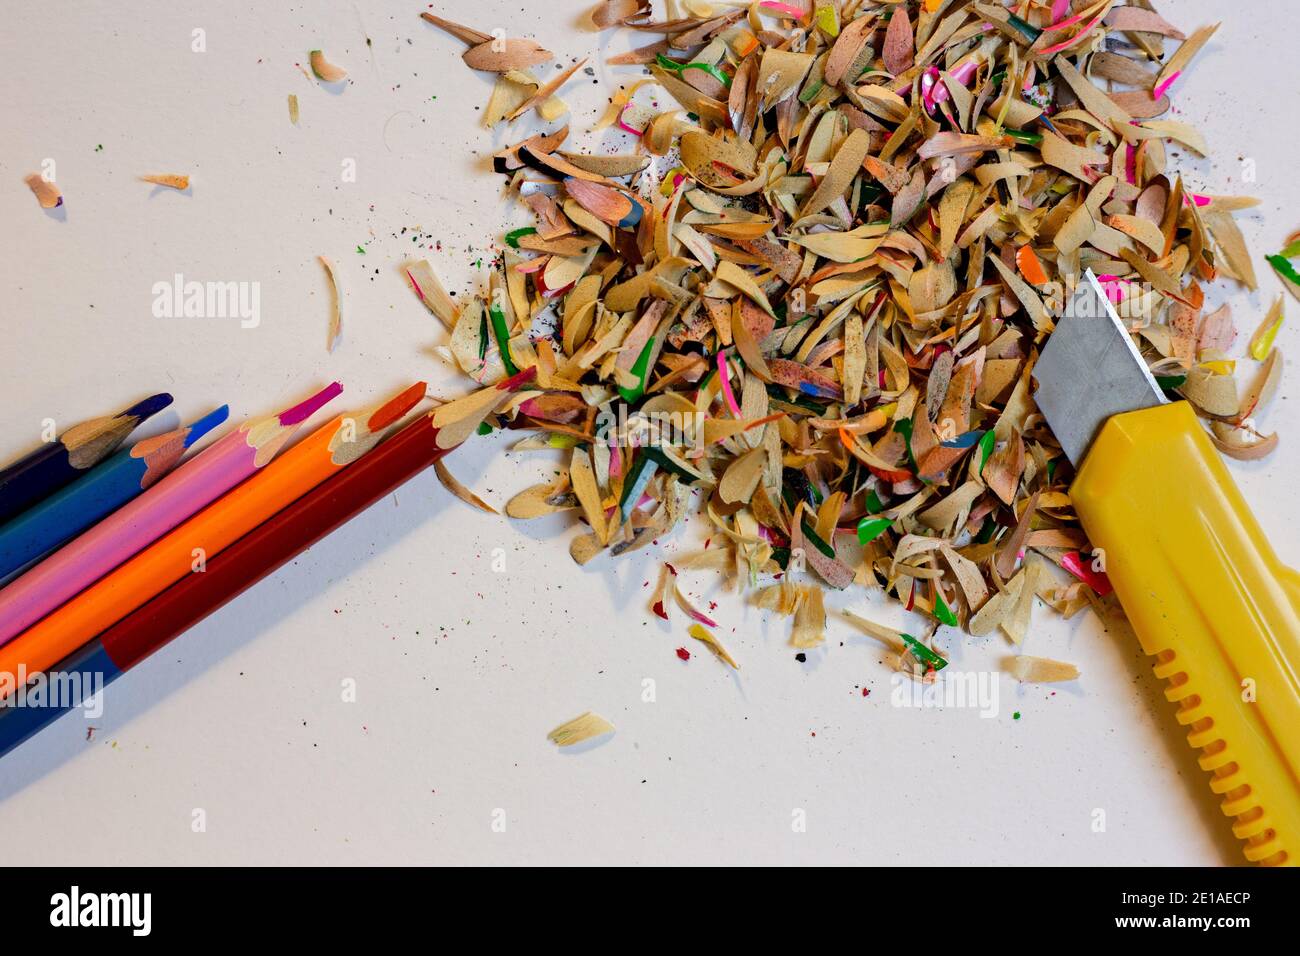 Buntstifte, Späne auf weißem Grund und ein Schreibwarenmesser Stockfoto